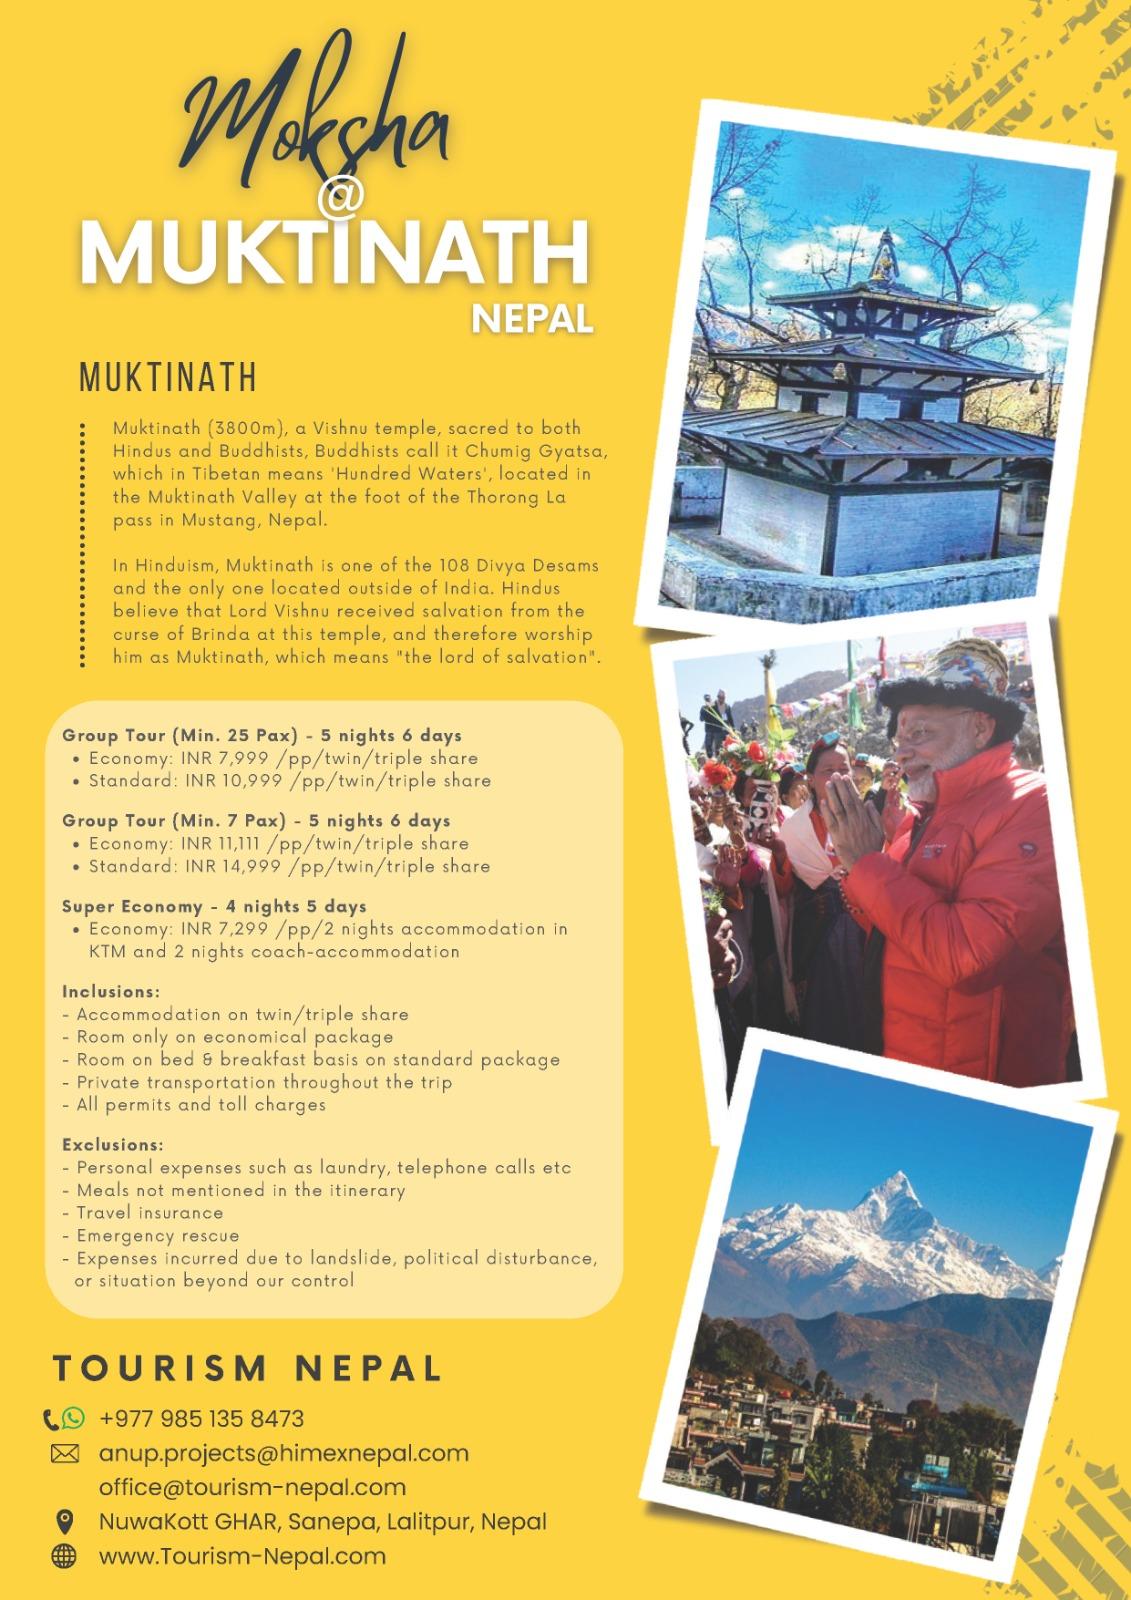 Mokhsa at Muktinath